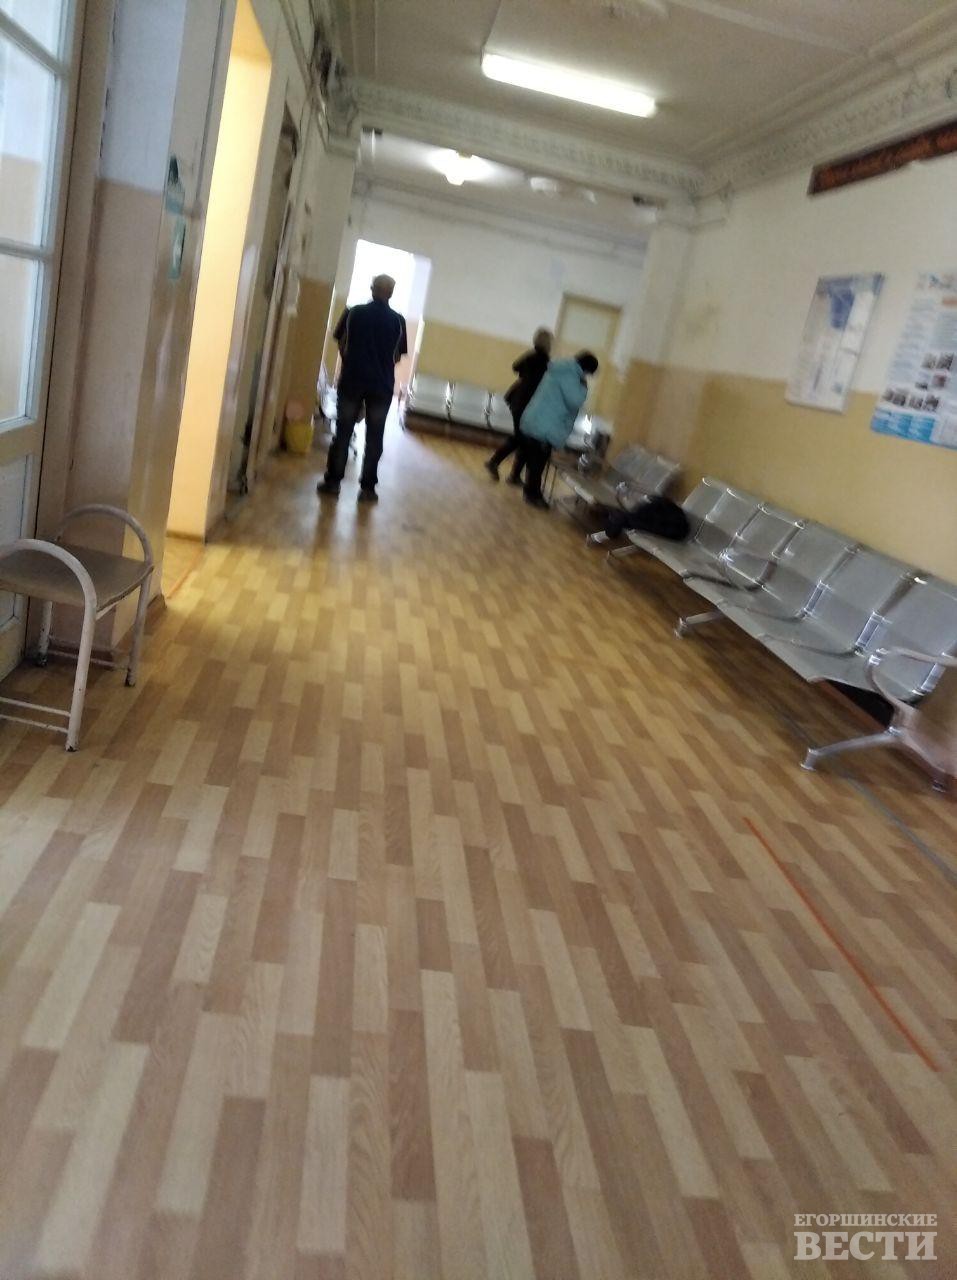 Поликлиника постепенно оживает. Здесь начался прием участковыми и узкими специалистами. Фото: Андрей Барабанов, “ЕВ”.